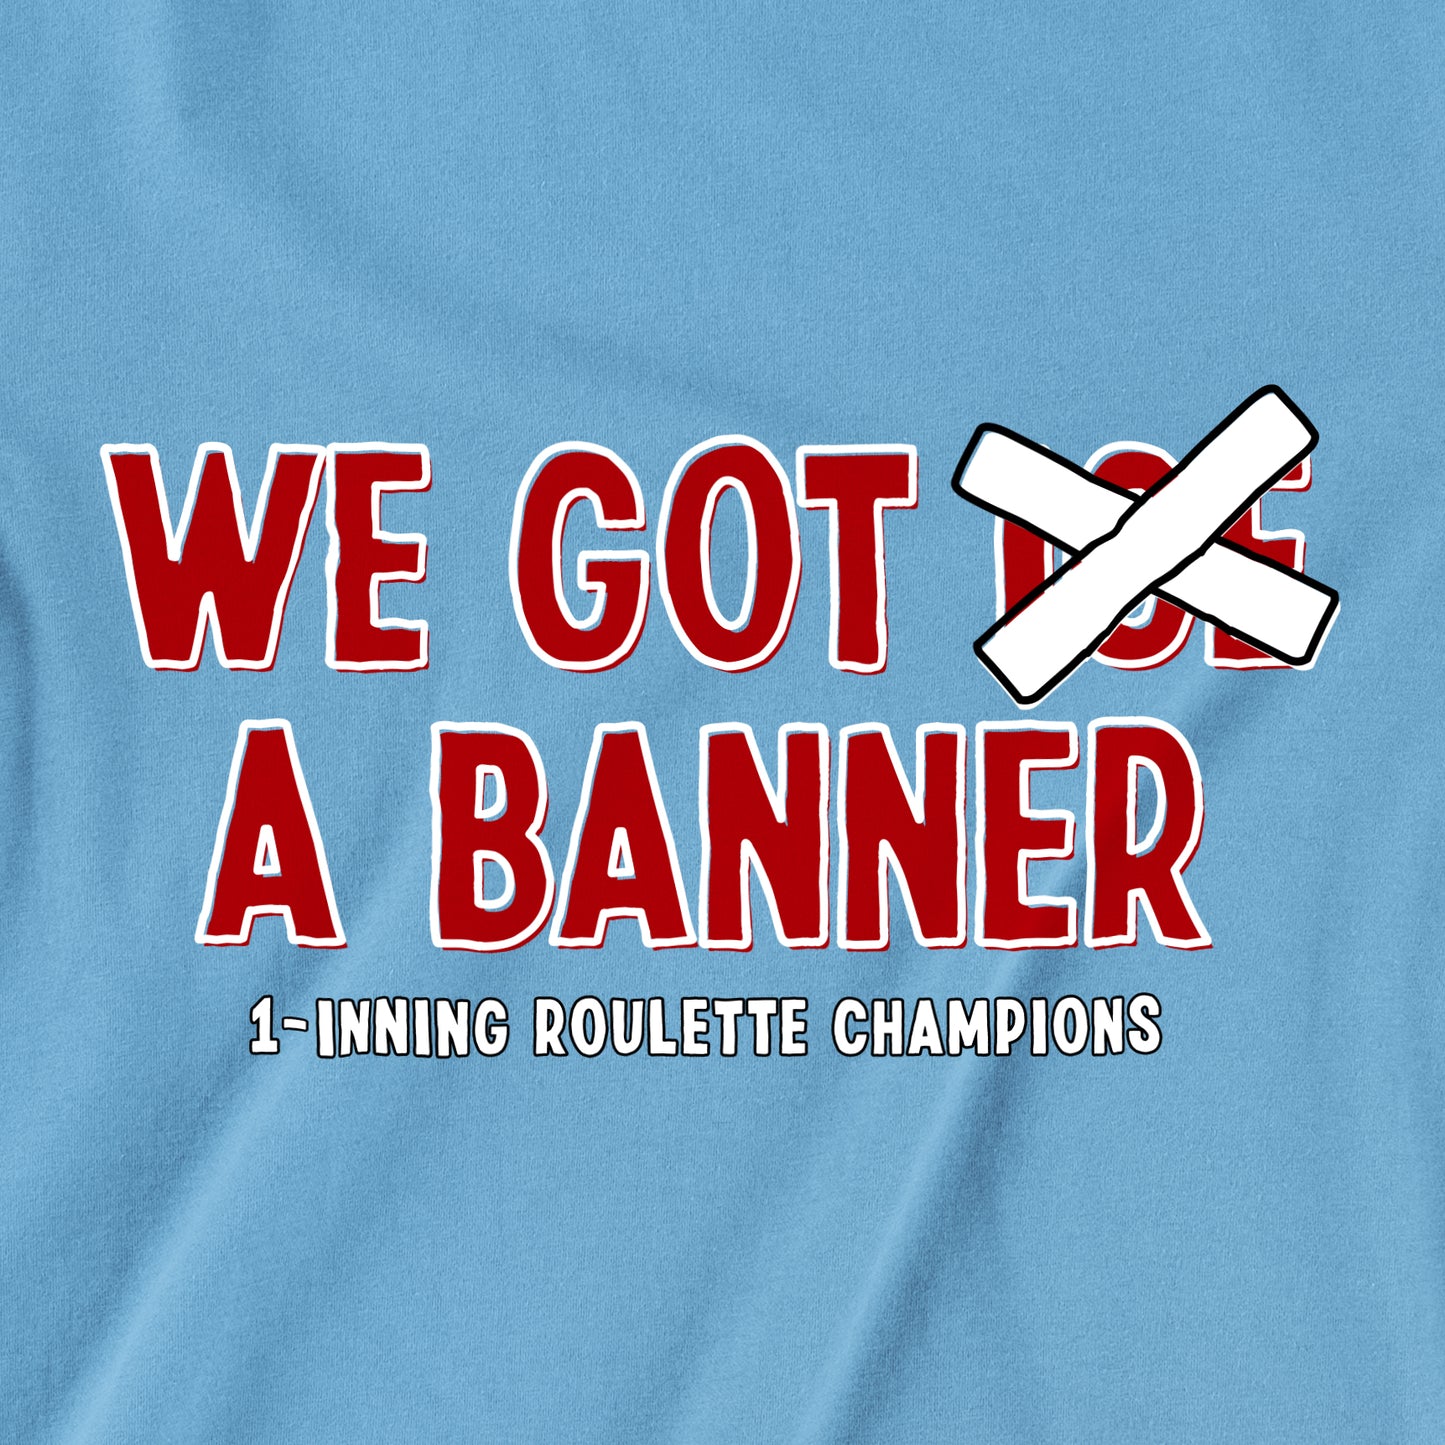 We Got a Banner | T-Shirt